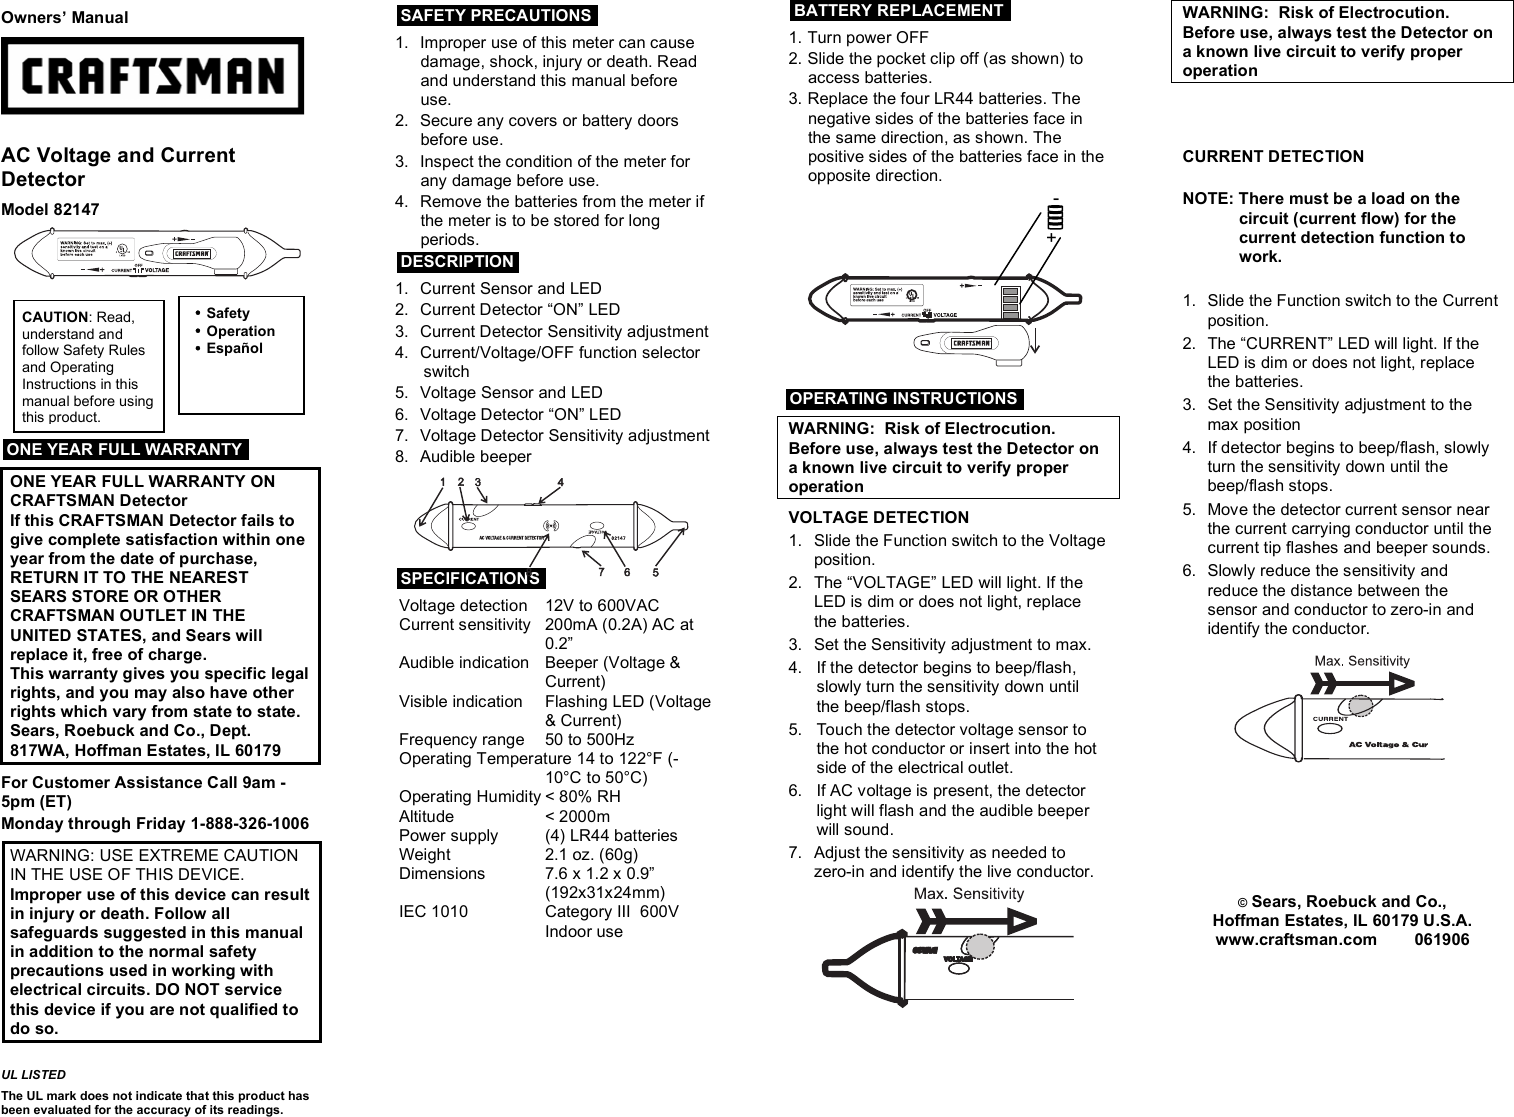 Page 1 of 1 - Craftsman Craftsman-82147-Users-Manual 82147 (DVA30)